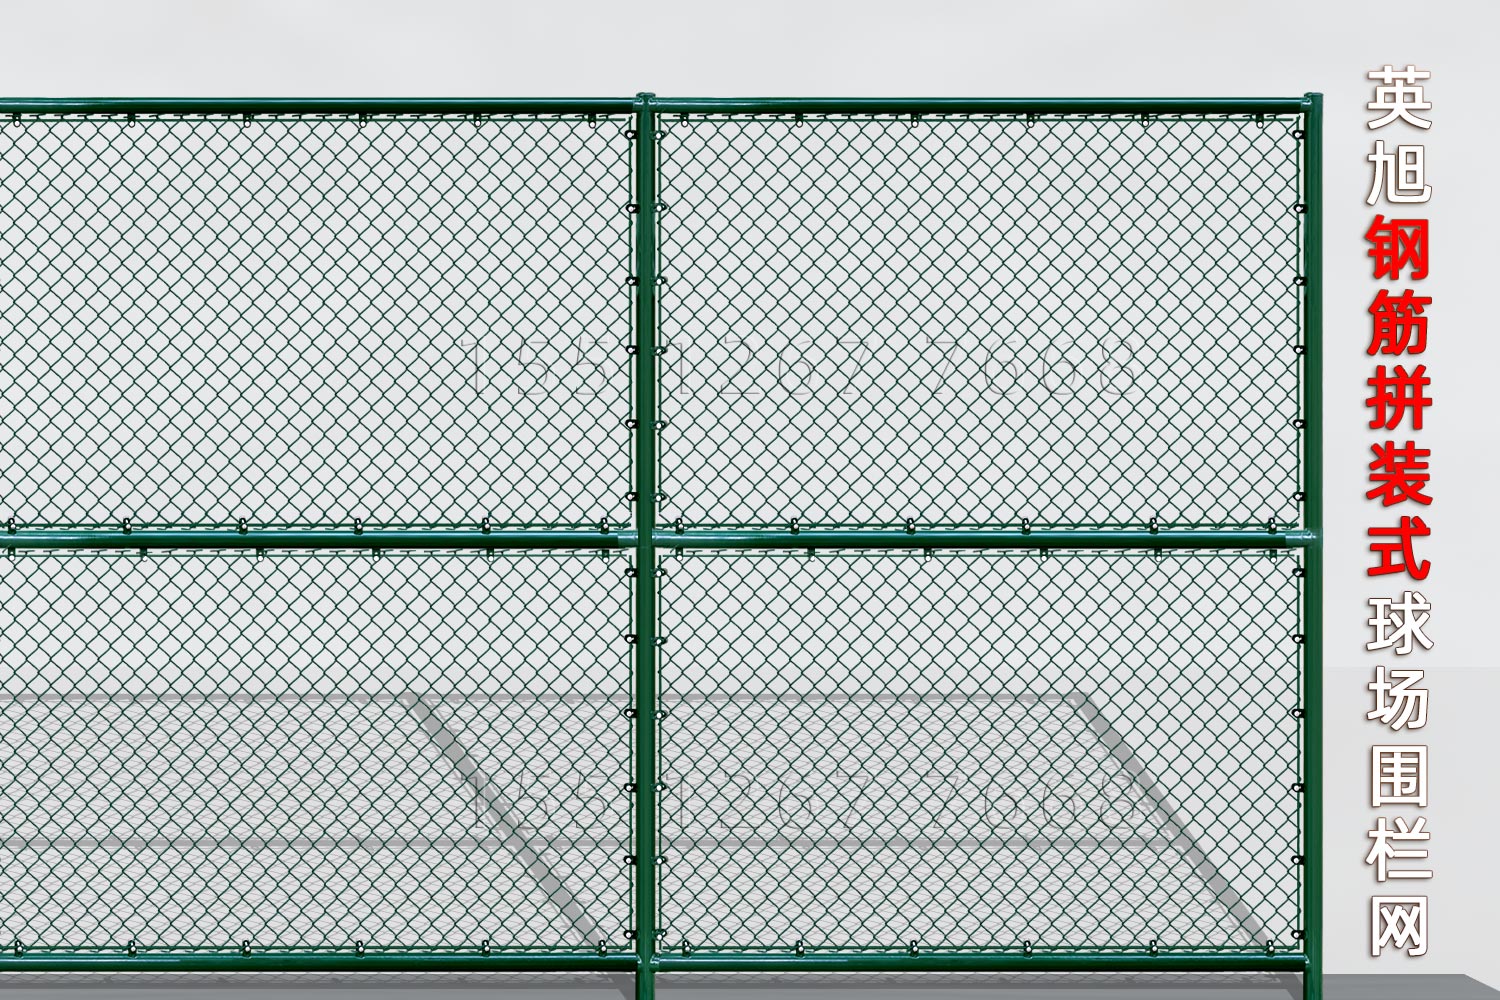 吉林省钢筋组装式球场围栏网